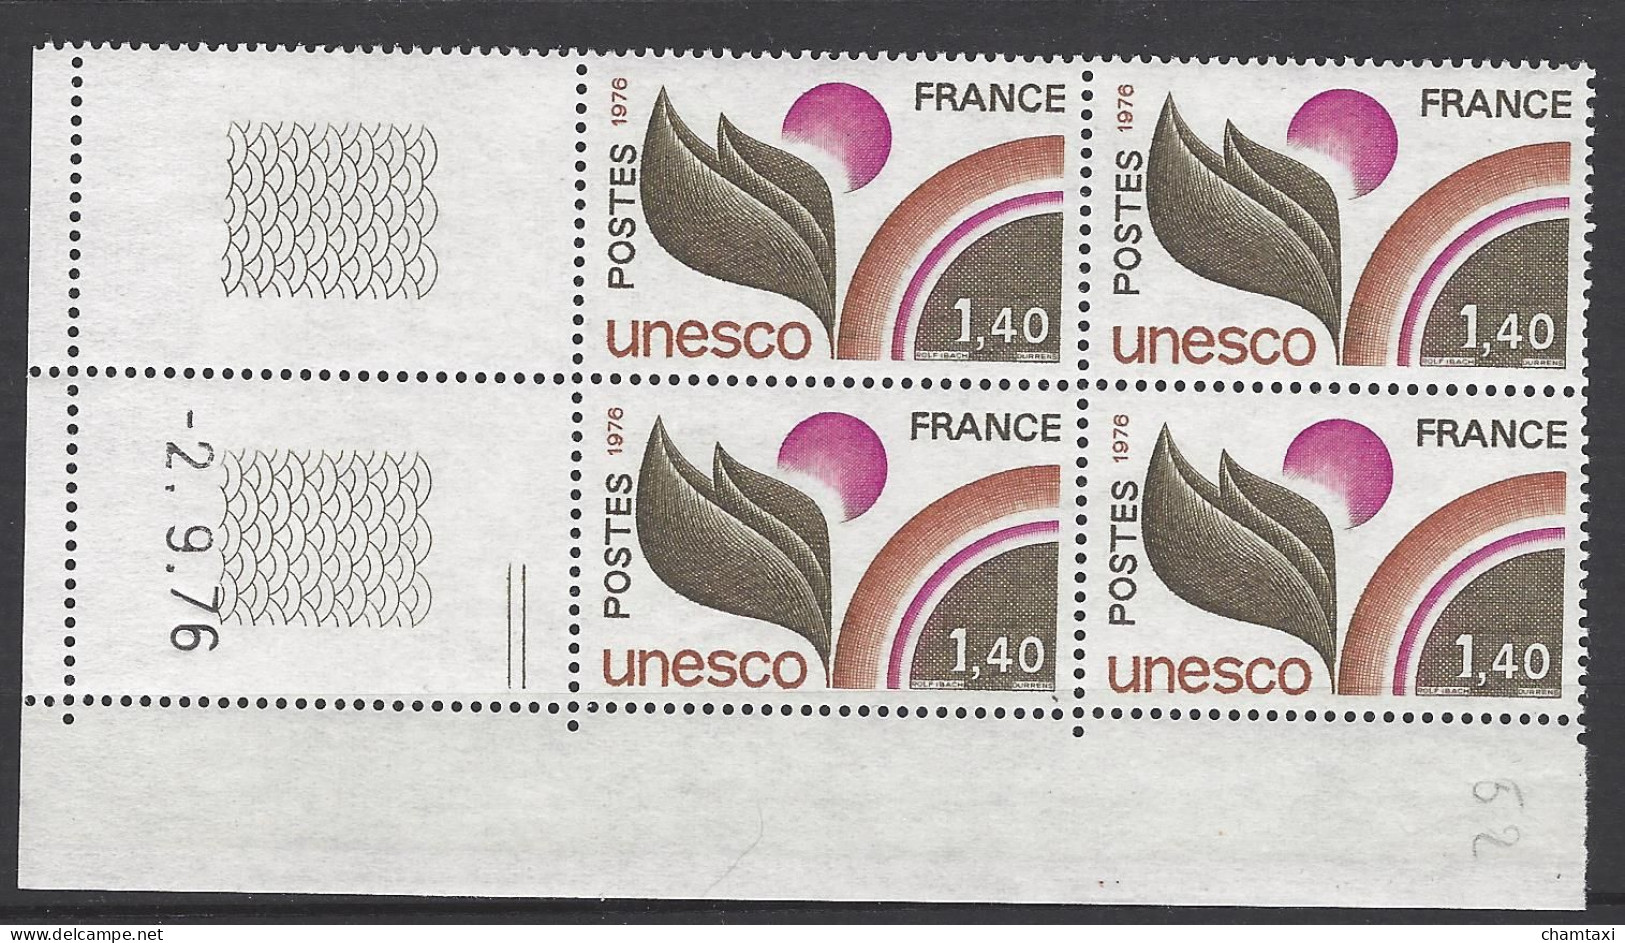 CD 52 FRANCE 1976 TIMBRE SERVICE UNESCO COIN DATE 52 : 2 / 9 / 76 - Servicio